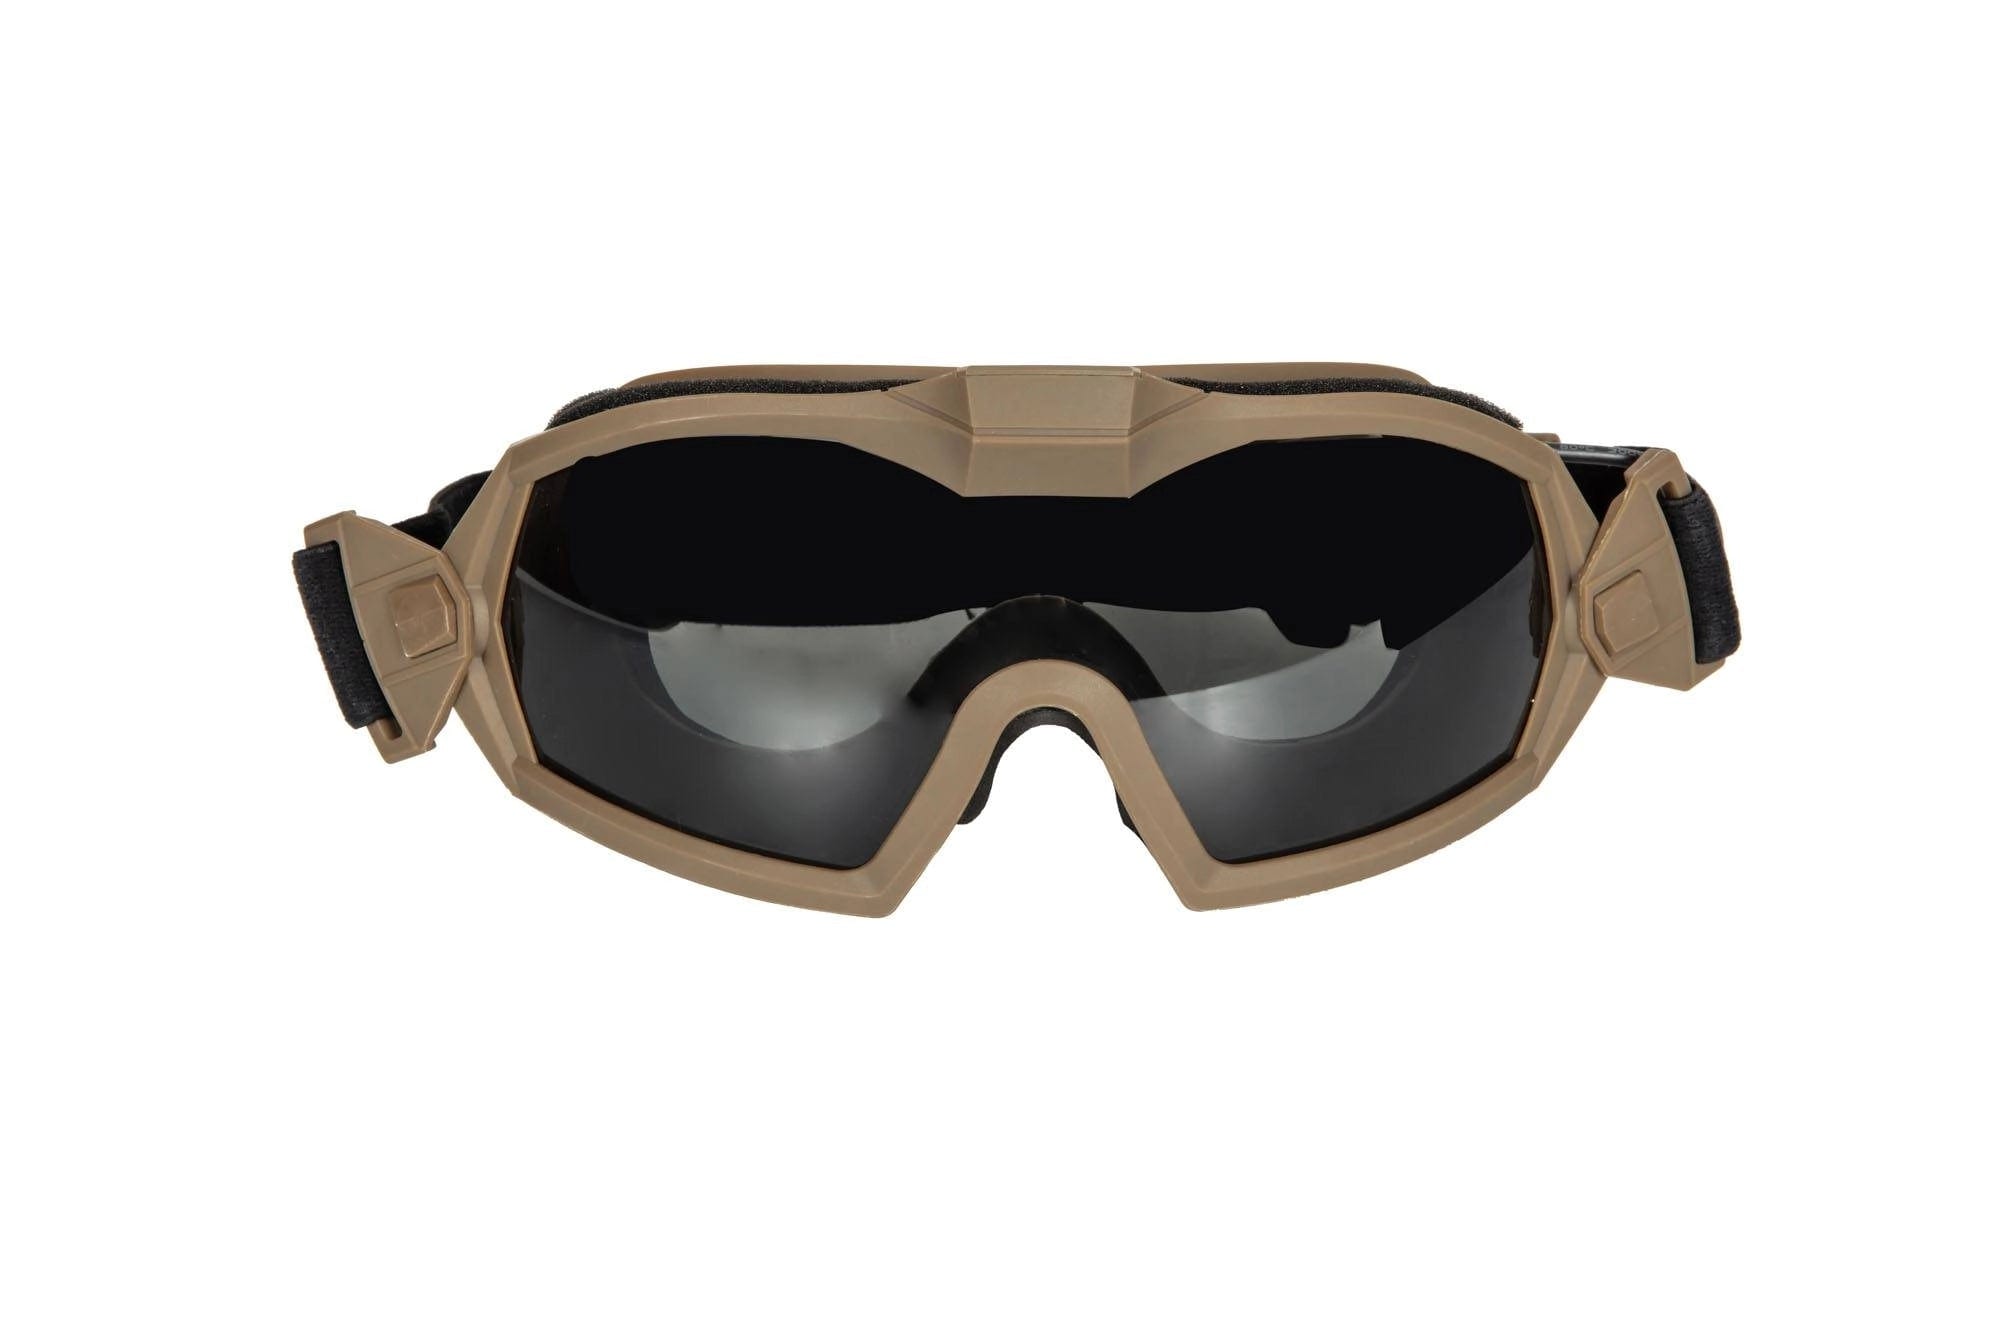 Taktische Schutzbrille mit Lüfter - Hellbraun